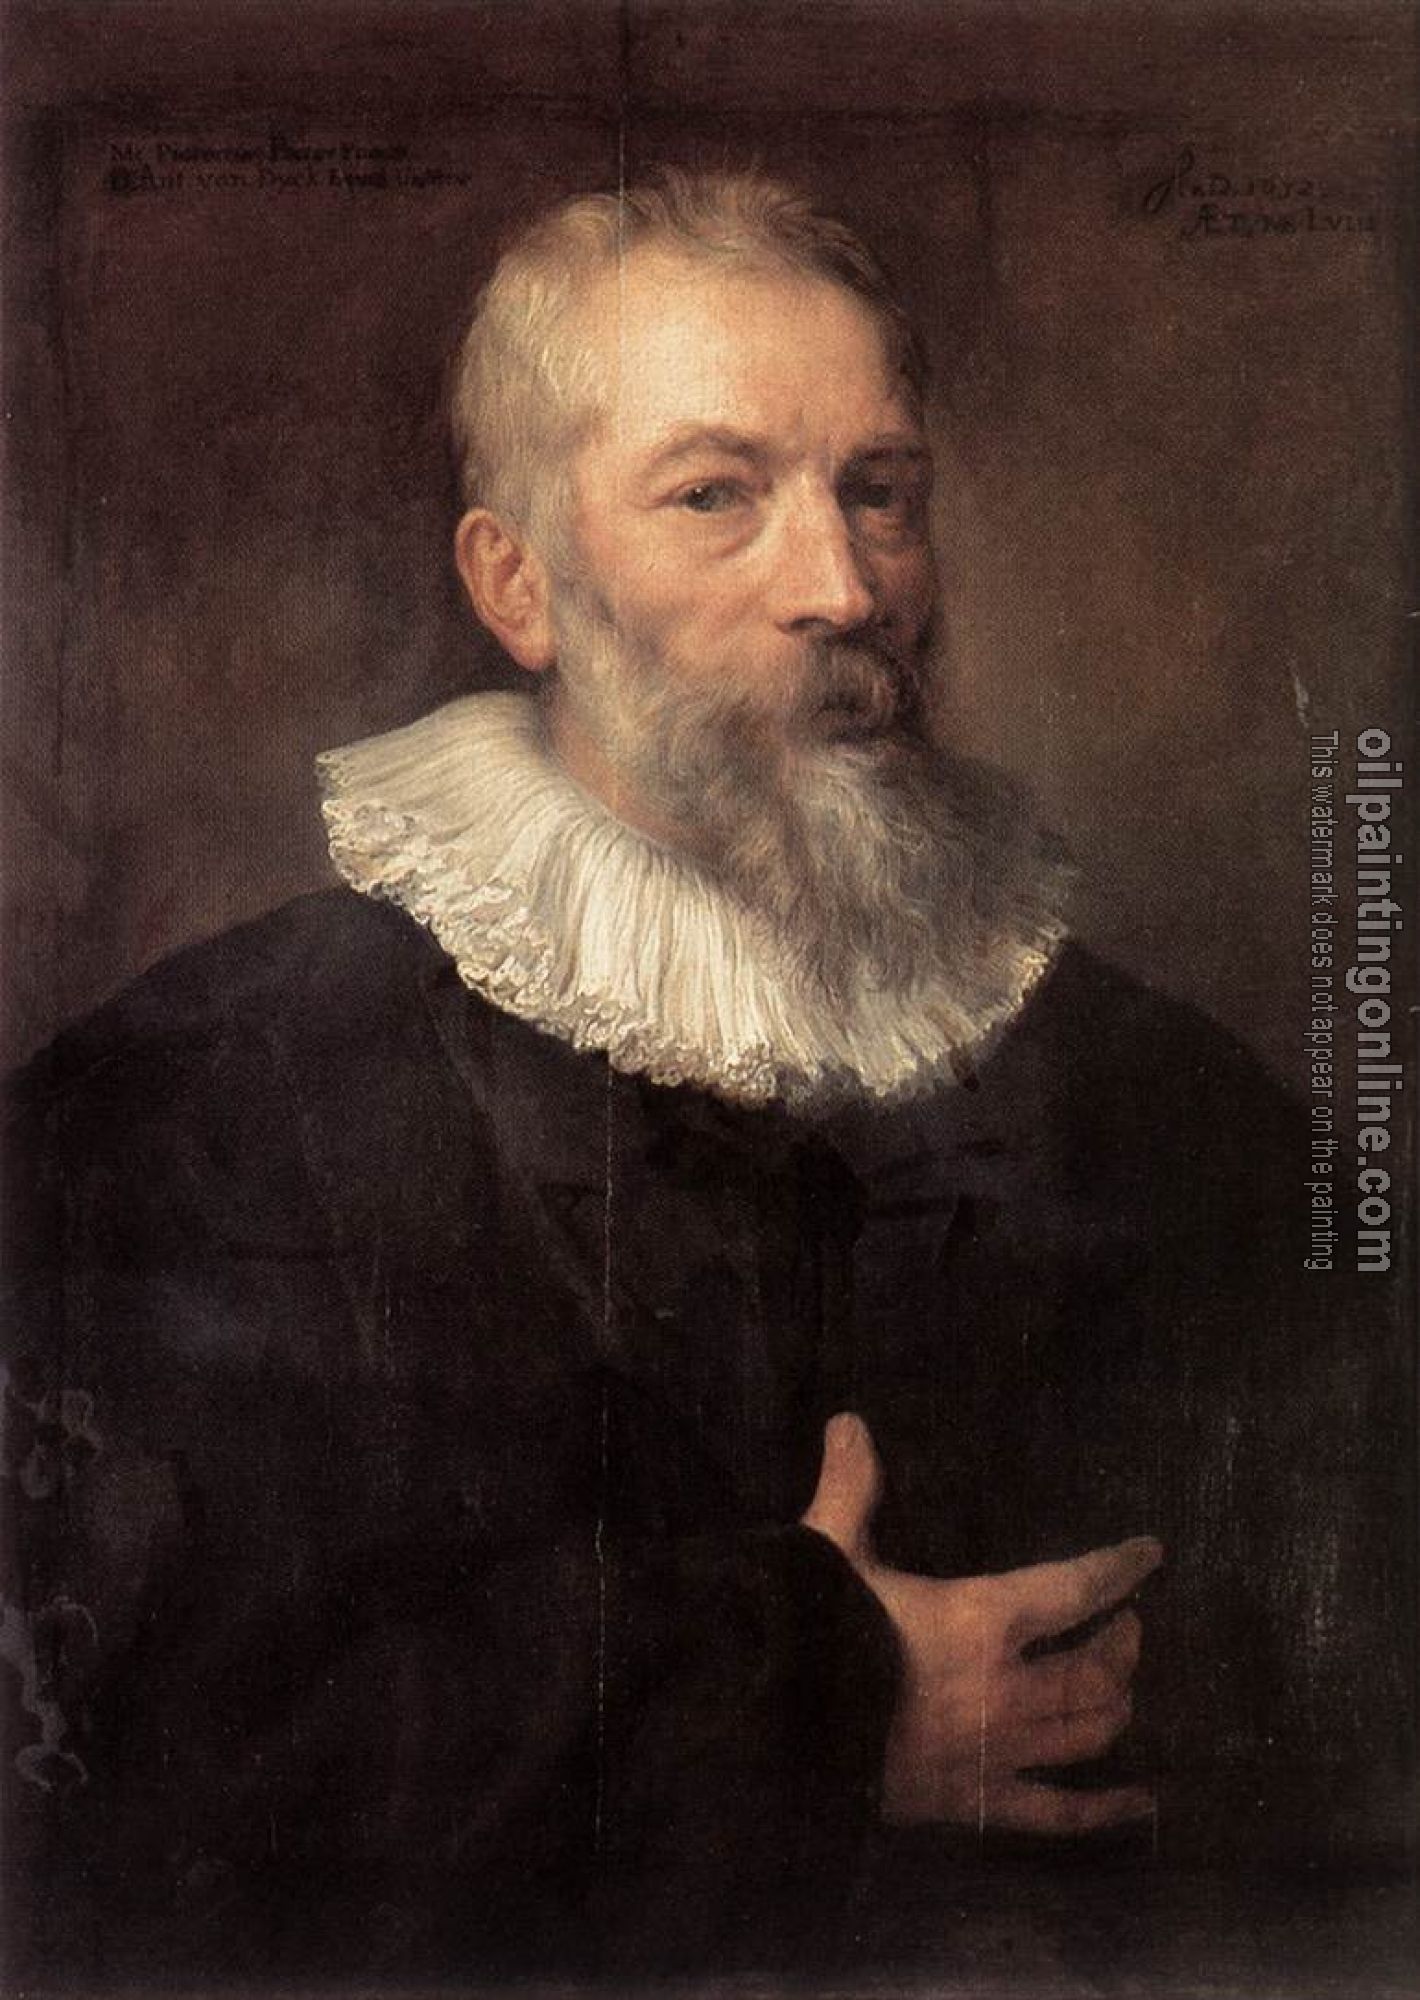 Dyck, Anthony van - Portrait of the Artist Marten Pepijn